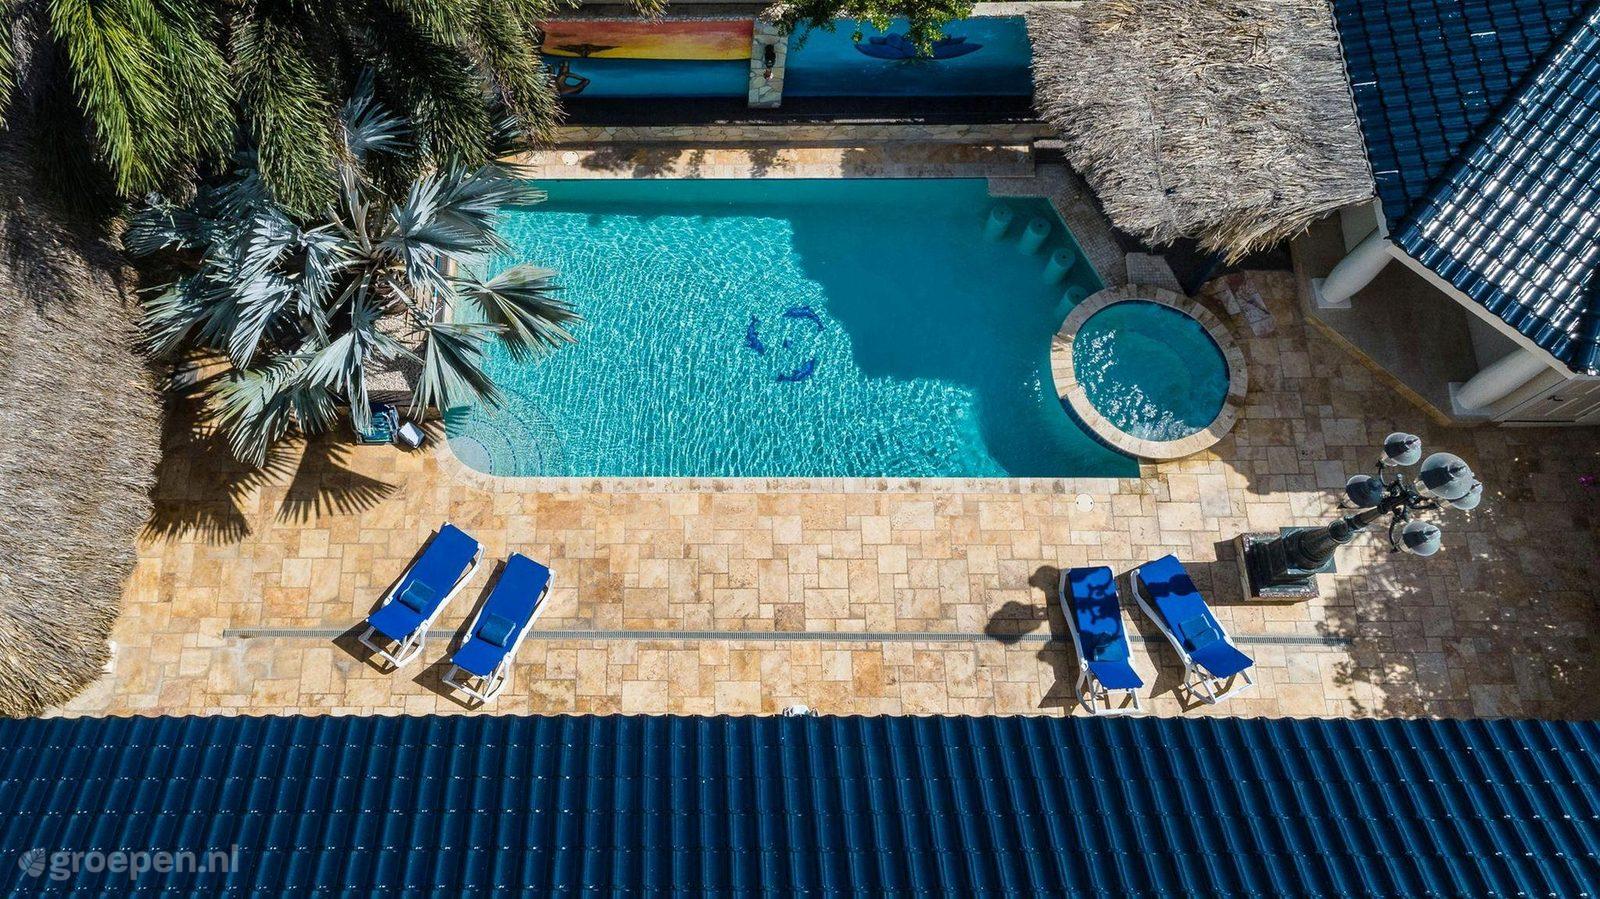 Villa Aruba